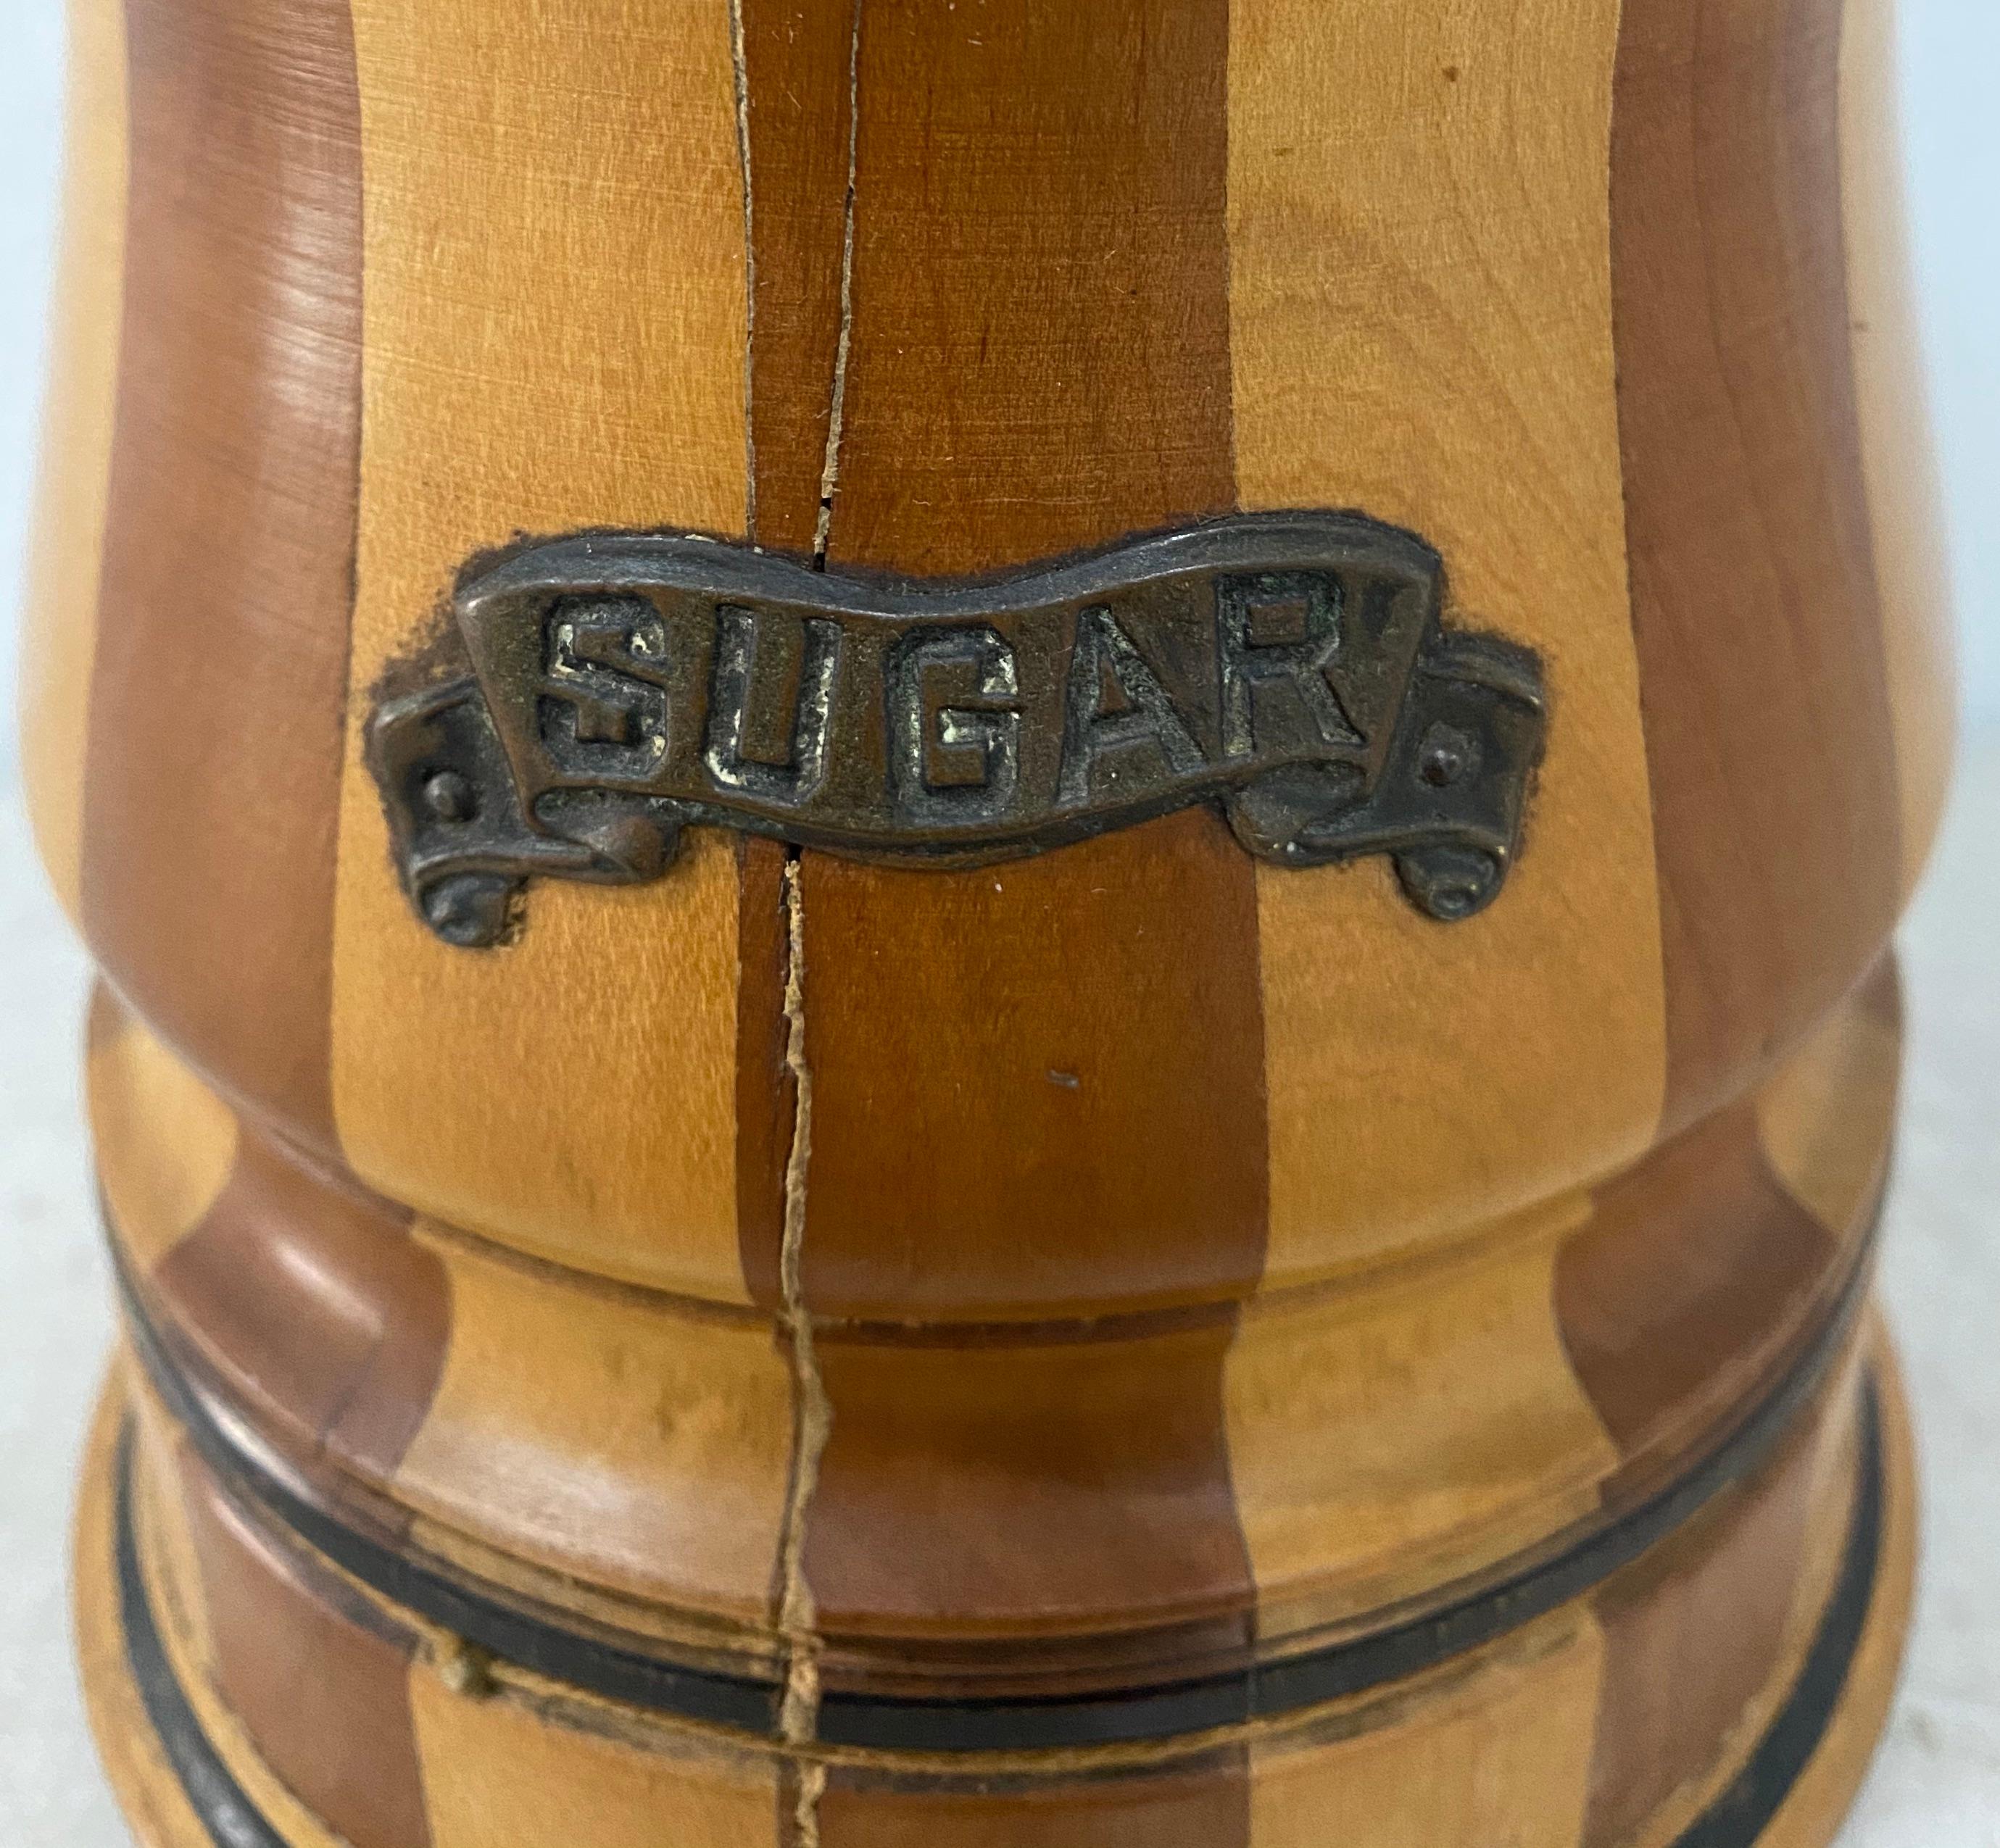 boîte à sucre en faïence américaine du 19e siècle avec couvercle

Dimensions : 5